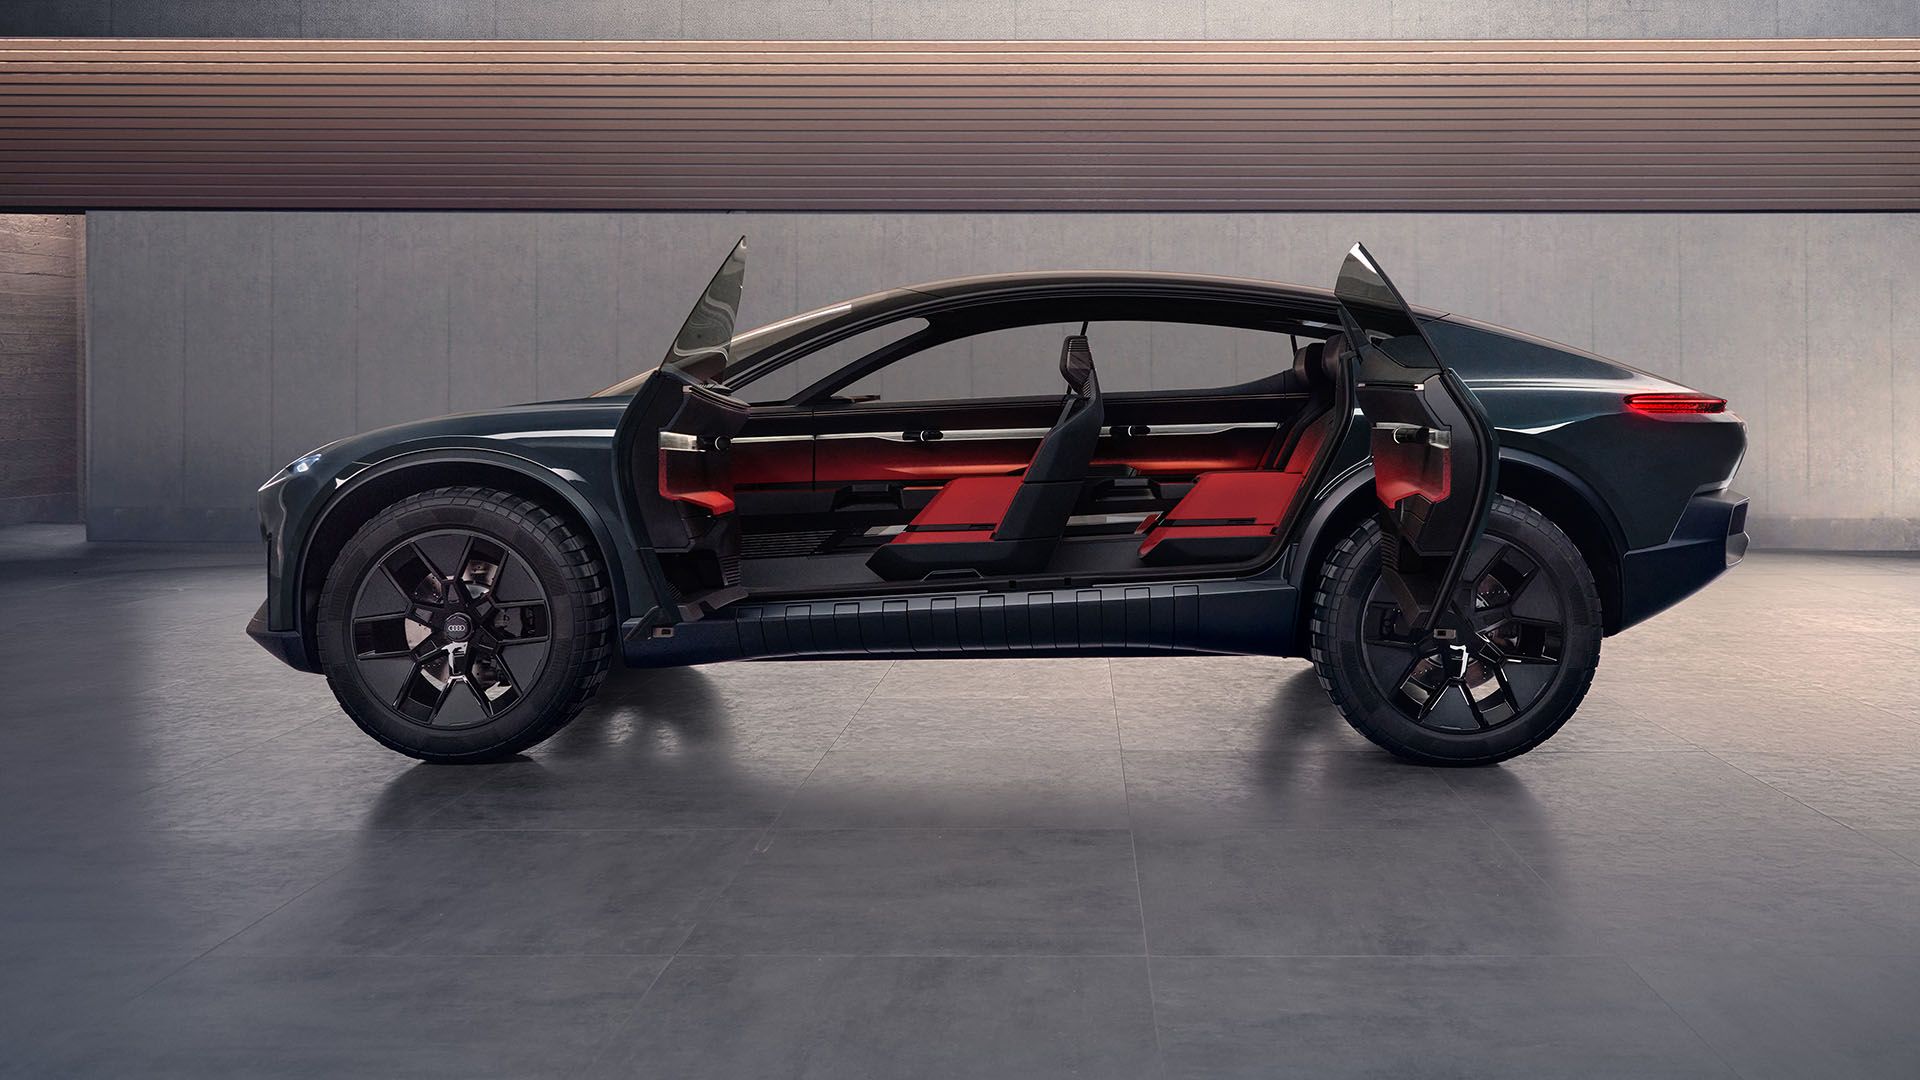 Die Türen des Audi activesphere concept sind geöffnet und erlauben einen Blick ins Innere des Fahrzeugs.